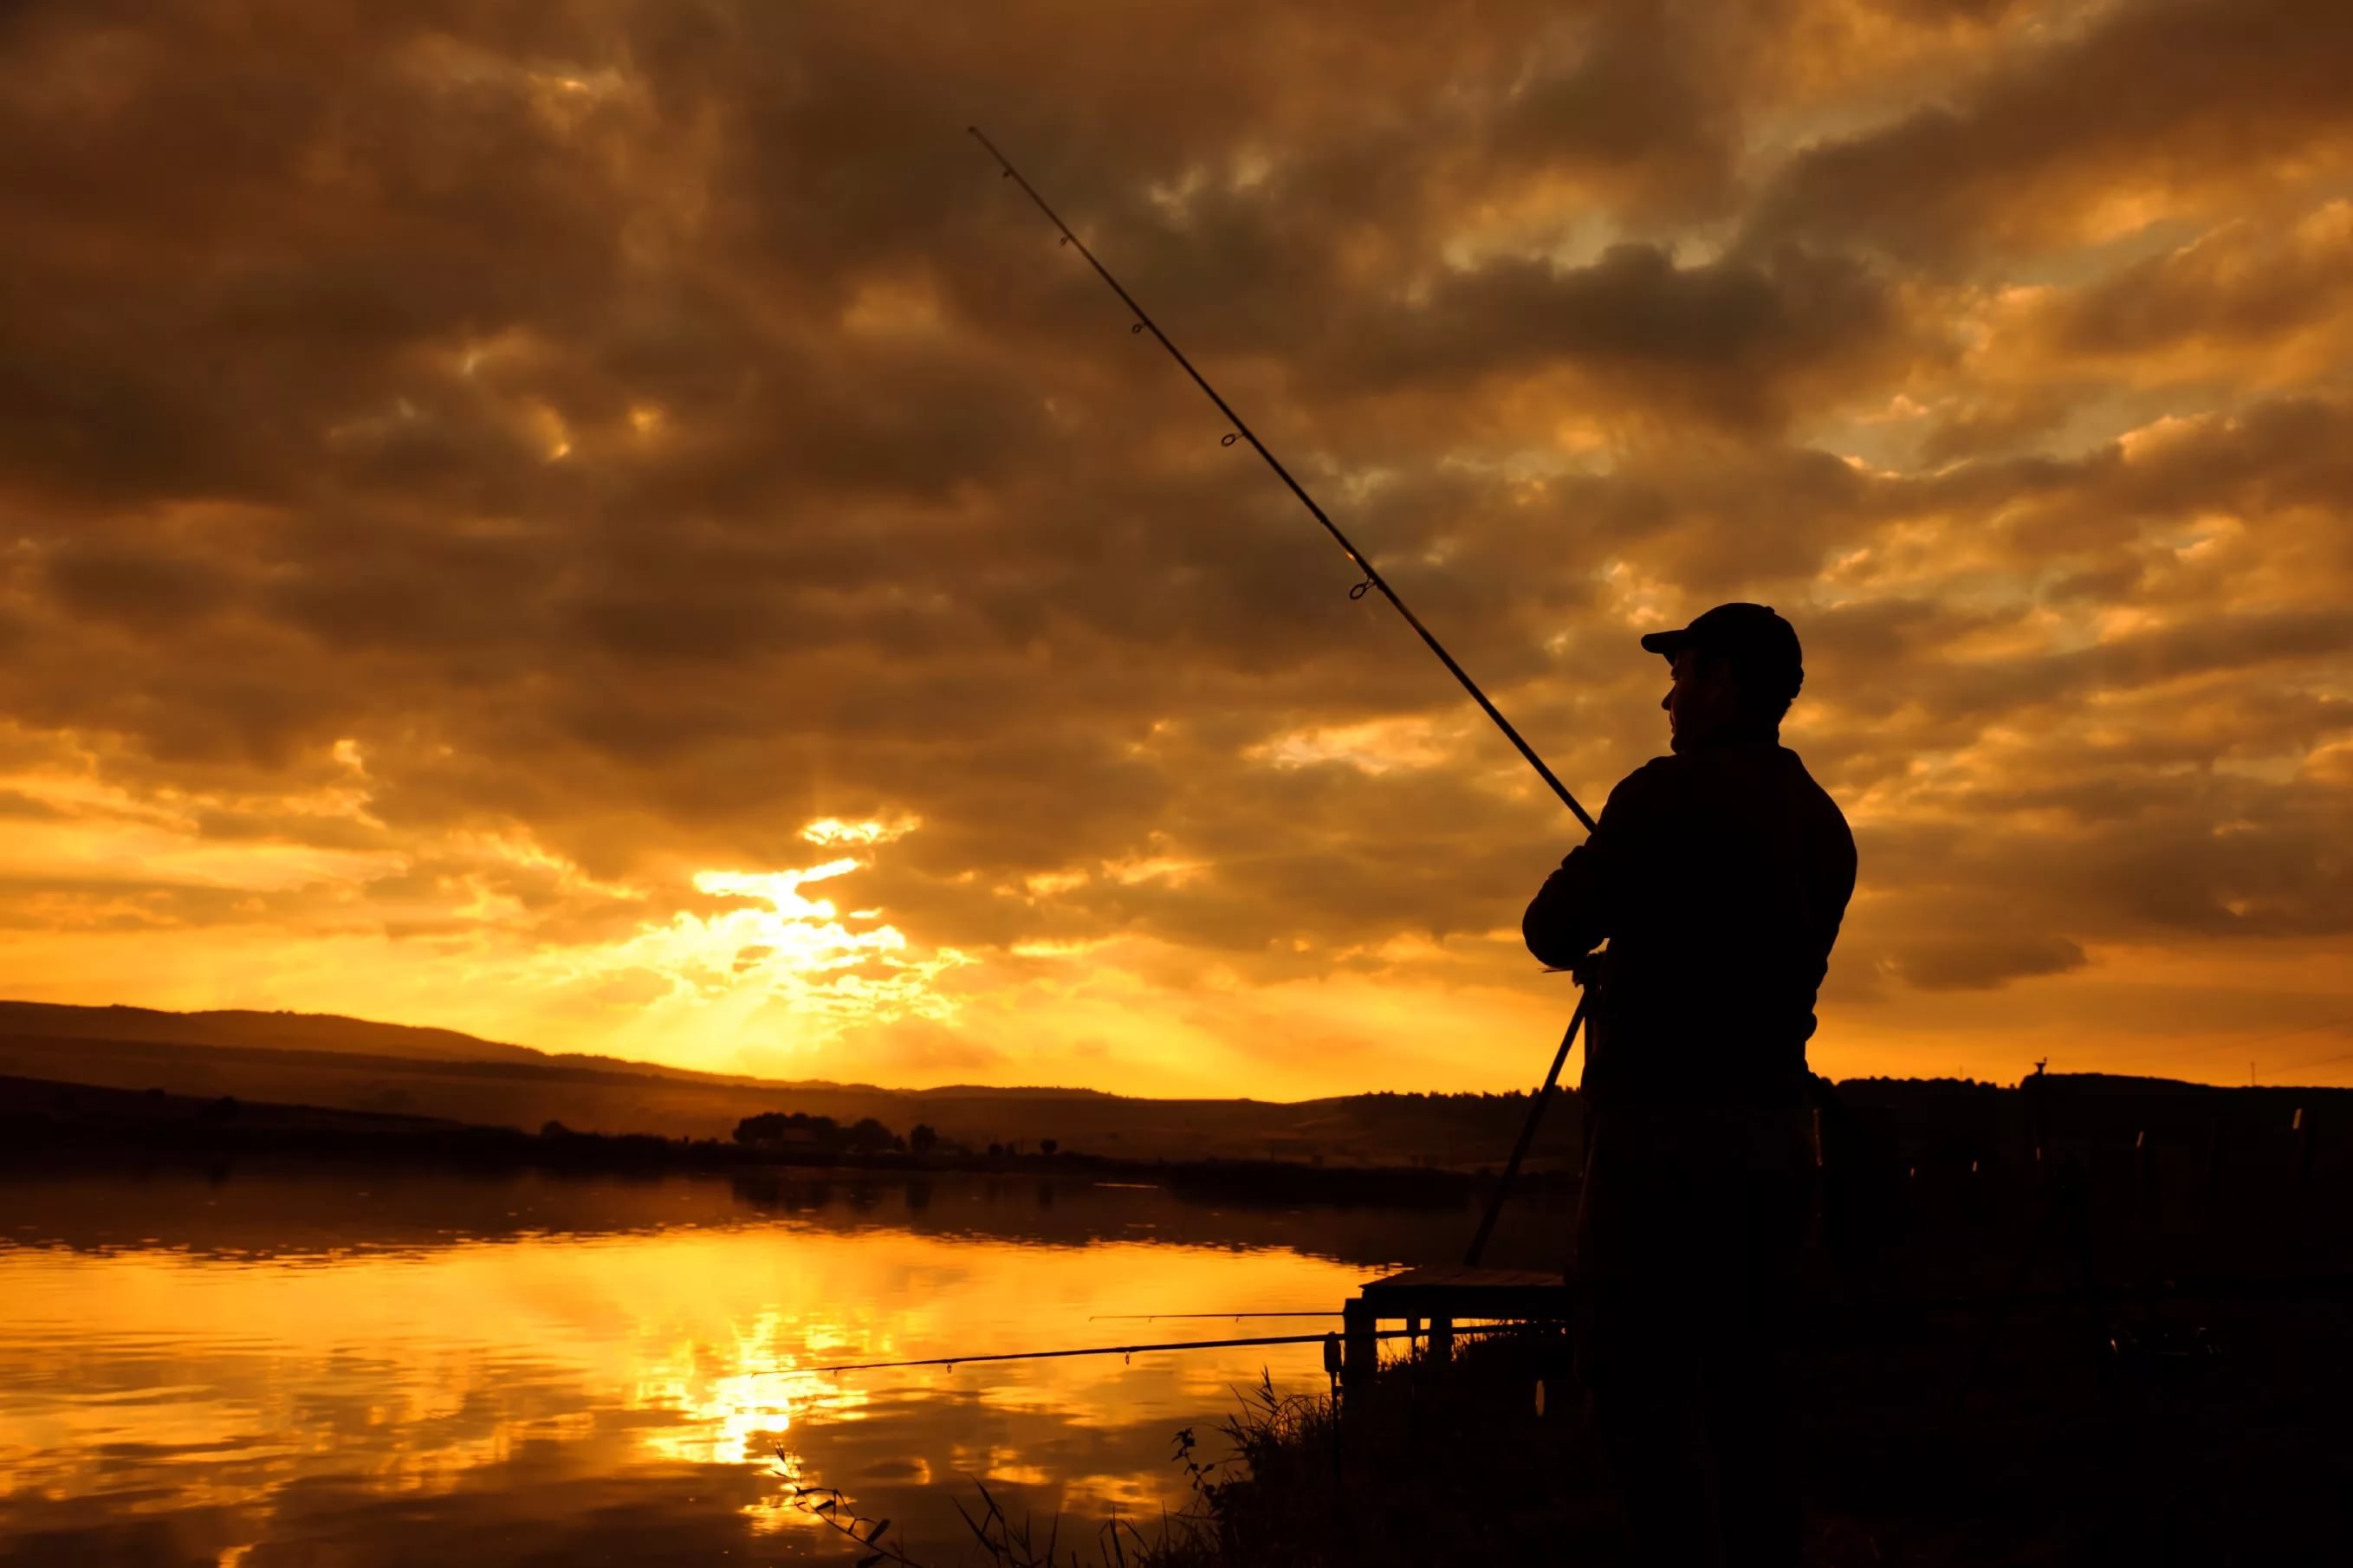 Мужик поймал рыбу. Рыбак с удочкой. Пейзаж с рыбаком. Рыбак на закате. Красивые пейзажи на рыбалке.